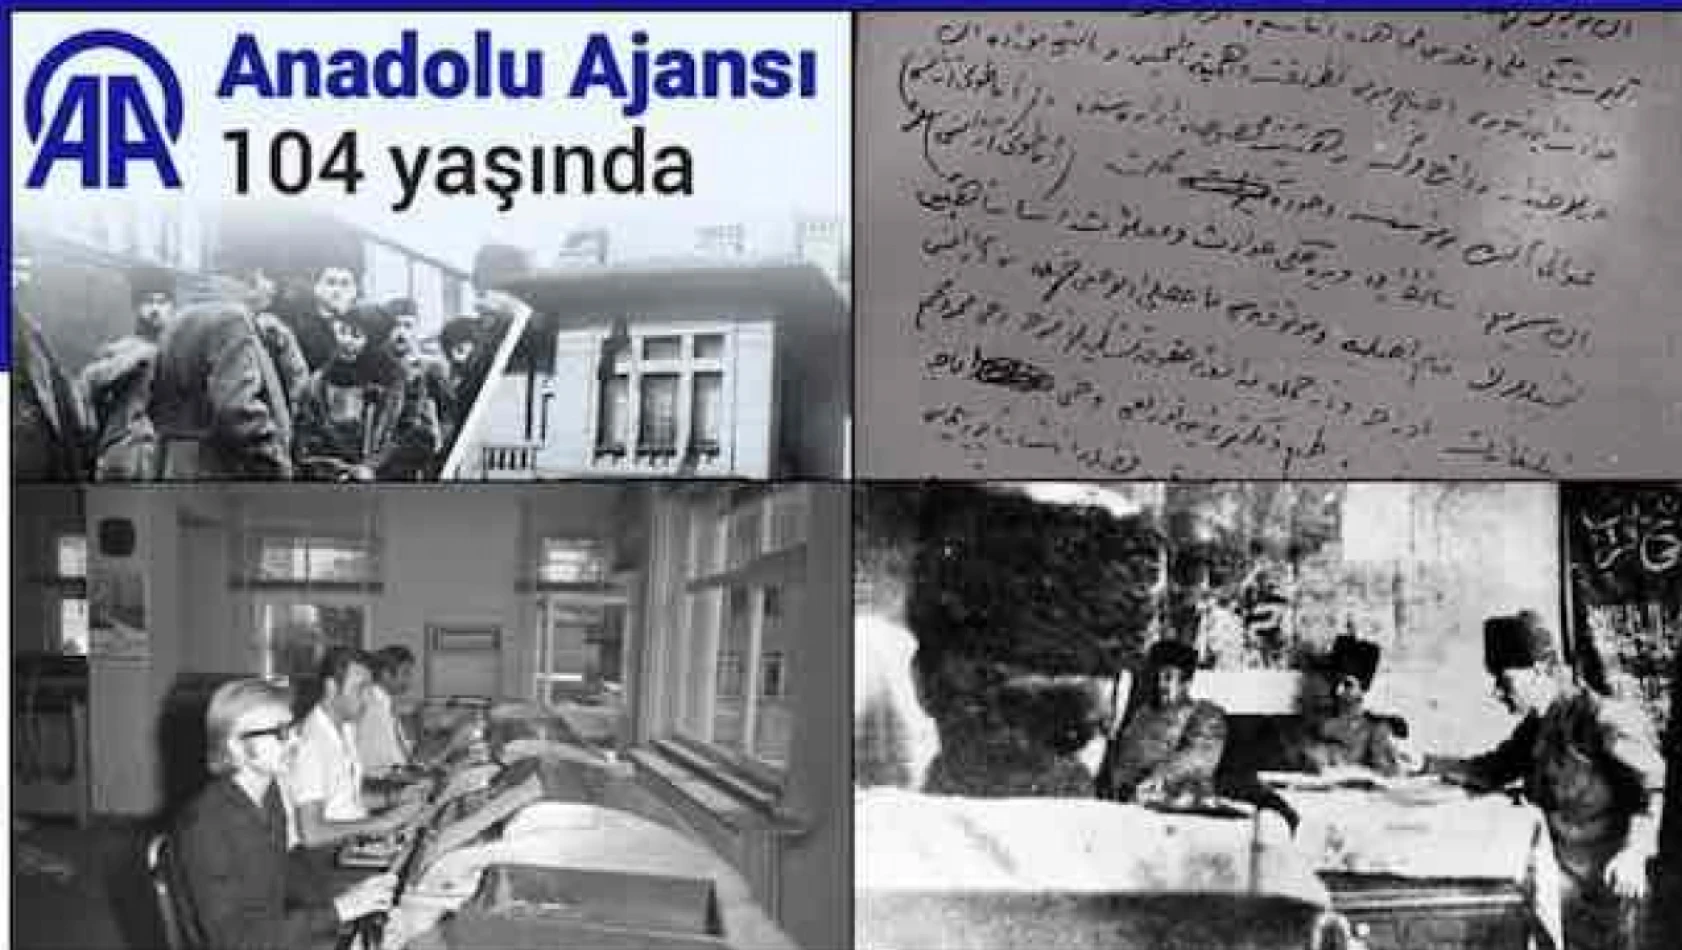 Milli Mücadele'nin sesini duyurmak için kurulan Anadolu Ajansı 104 yaşında